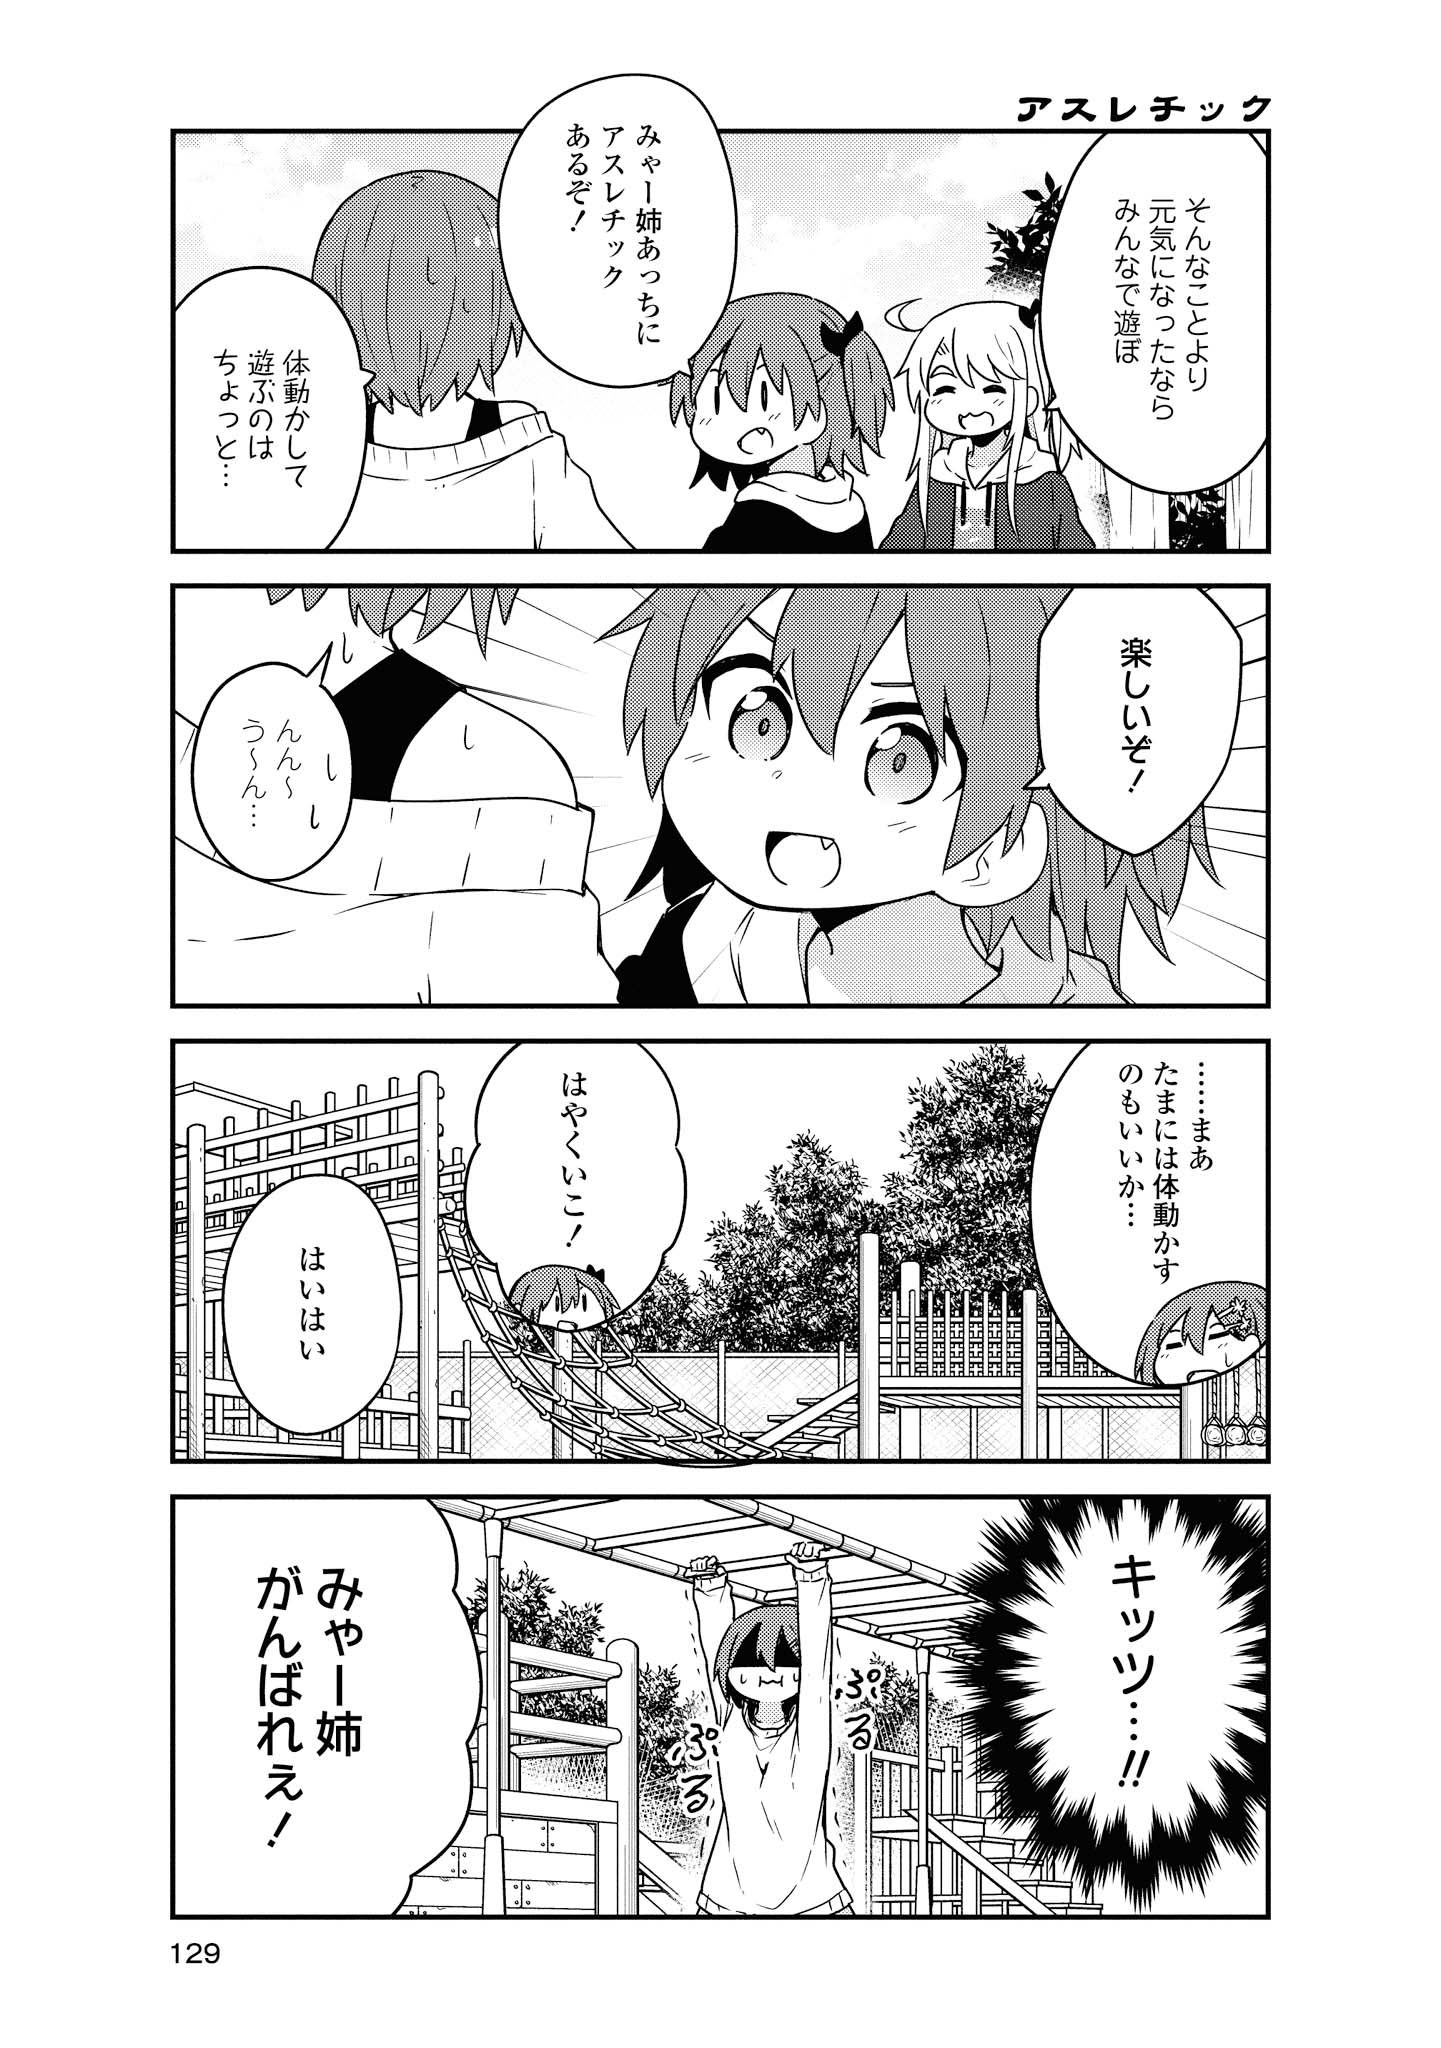 Watashi ni Tenshi ga Maiorita! - Chapter 60 - Page 5